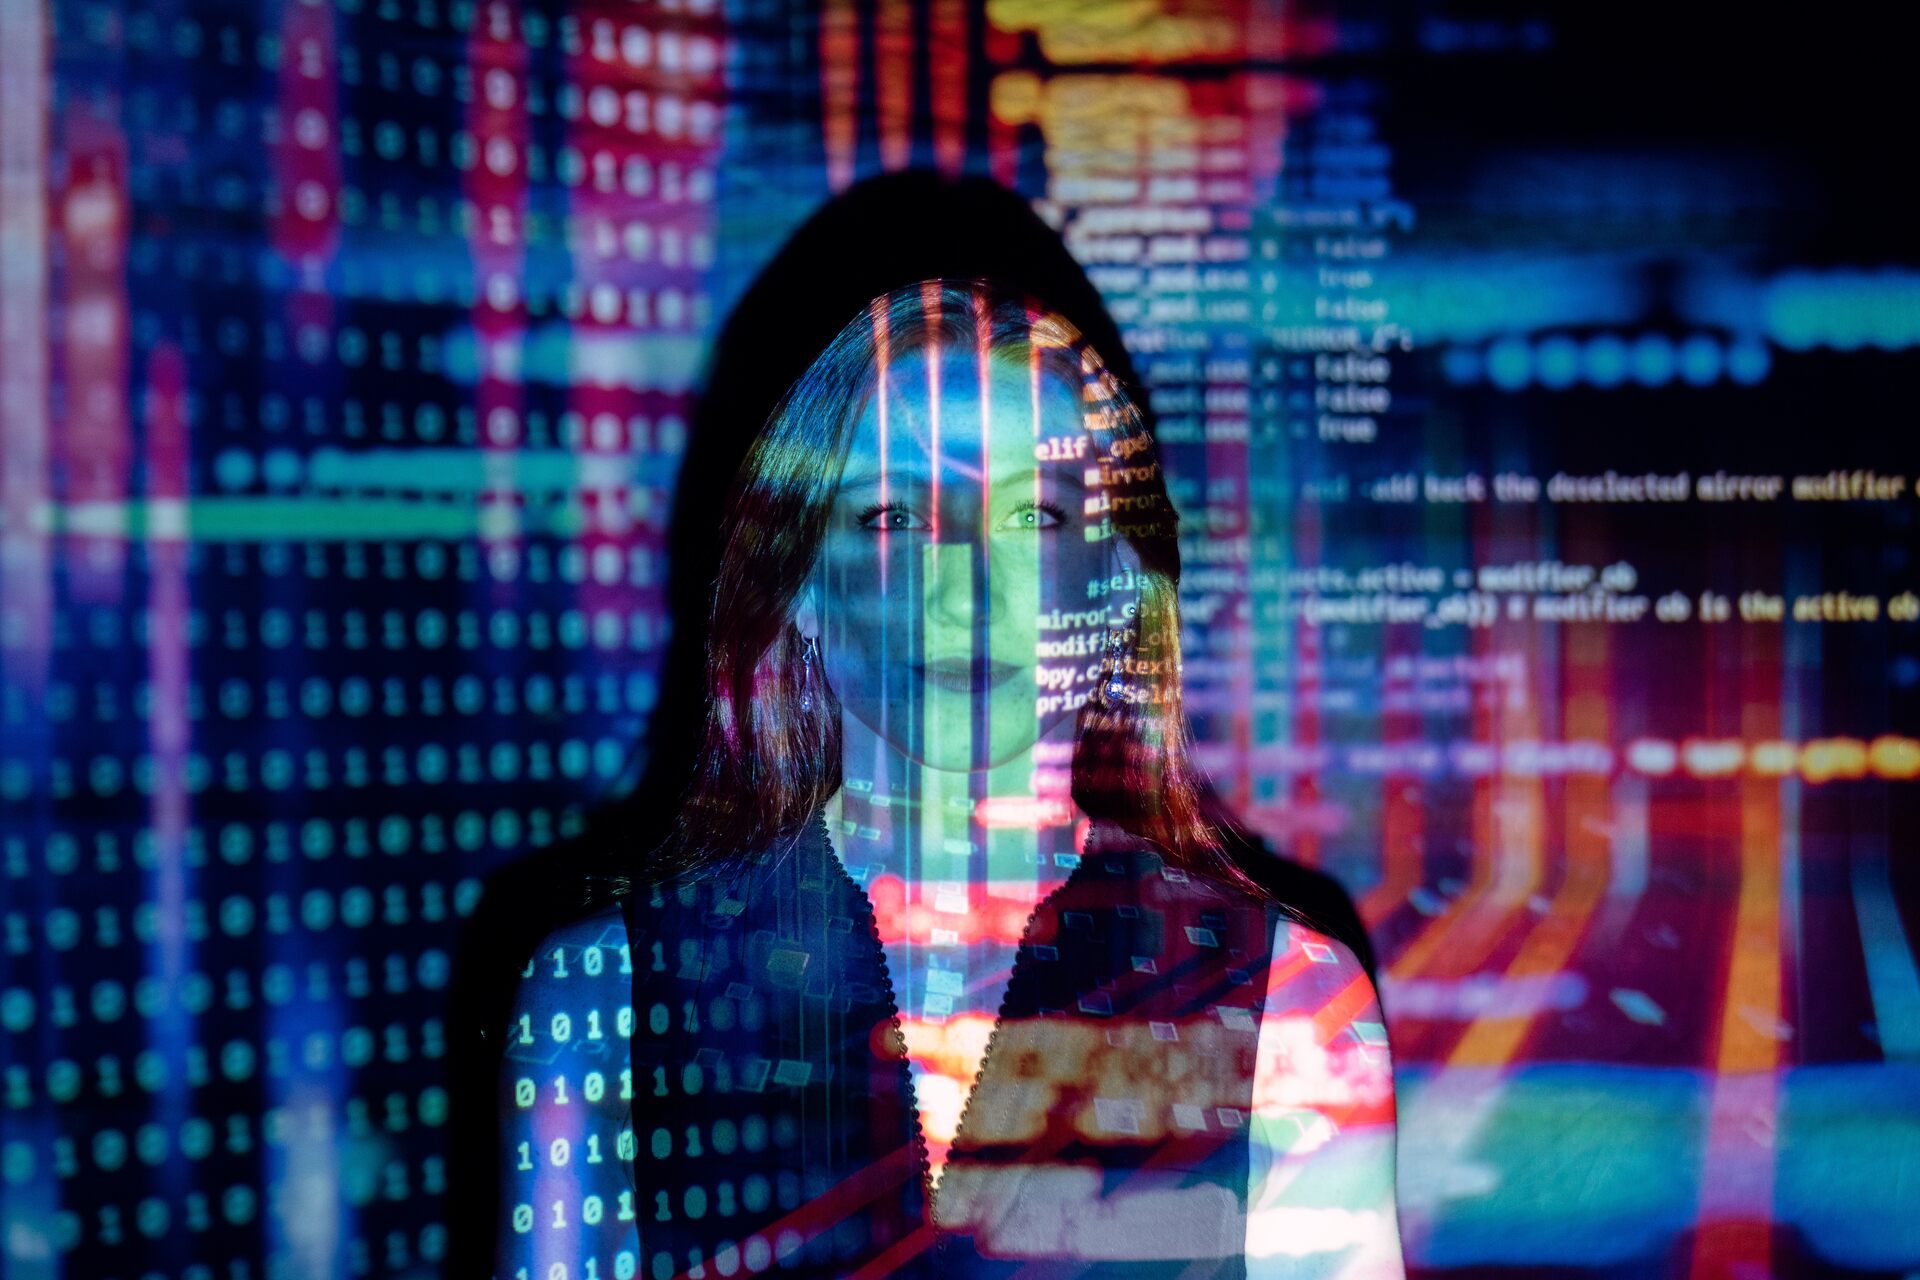 Futuro del lavoro: algoritmi luminosi si proiettano sul volto di una ragazza, indizio di una visione futuristica della società guidata dall’innovazione